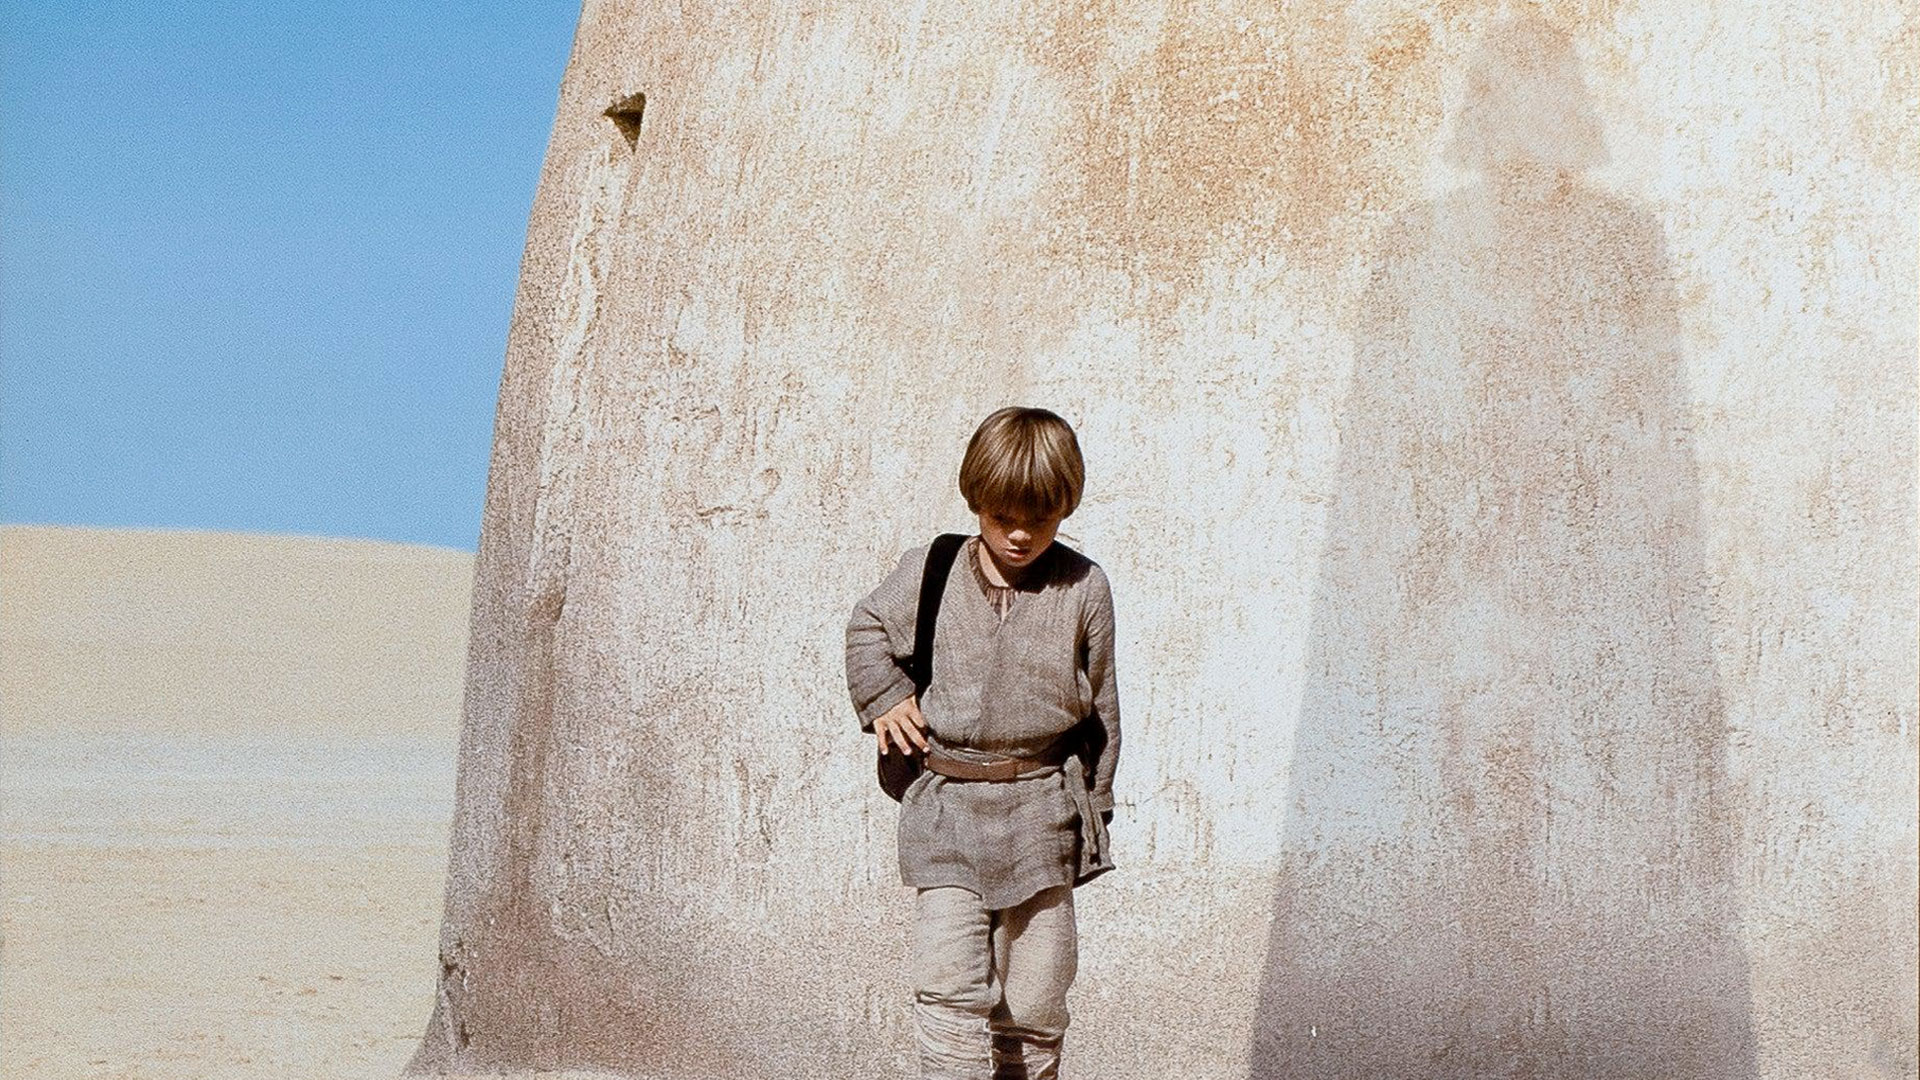 Poster de Star Wars Episodio I: La Amenaza Fantasma